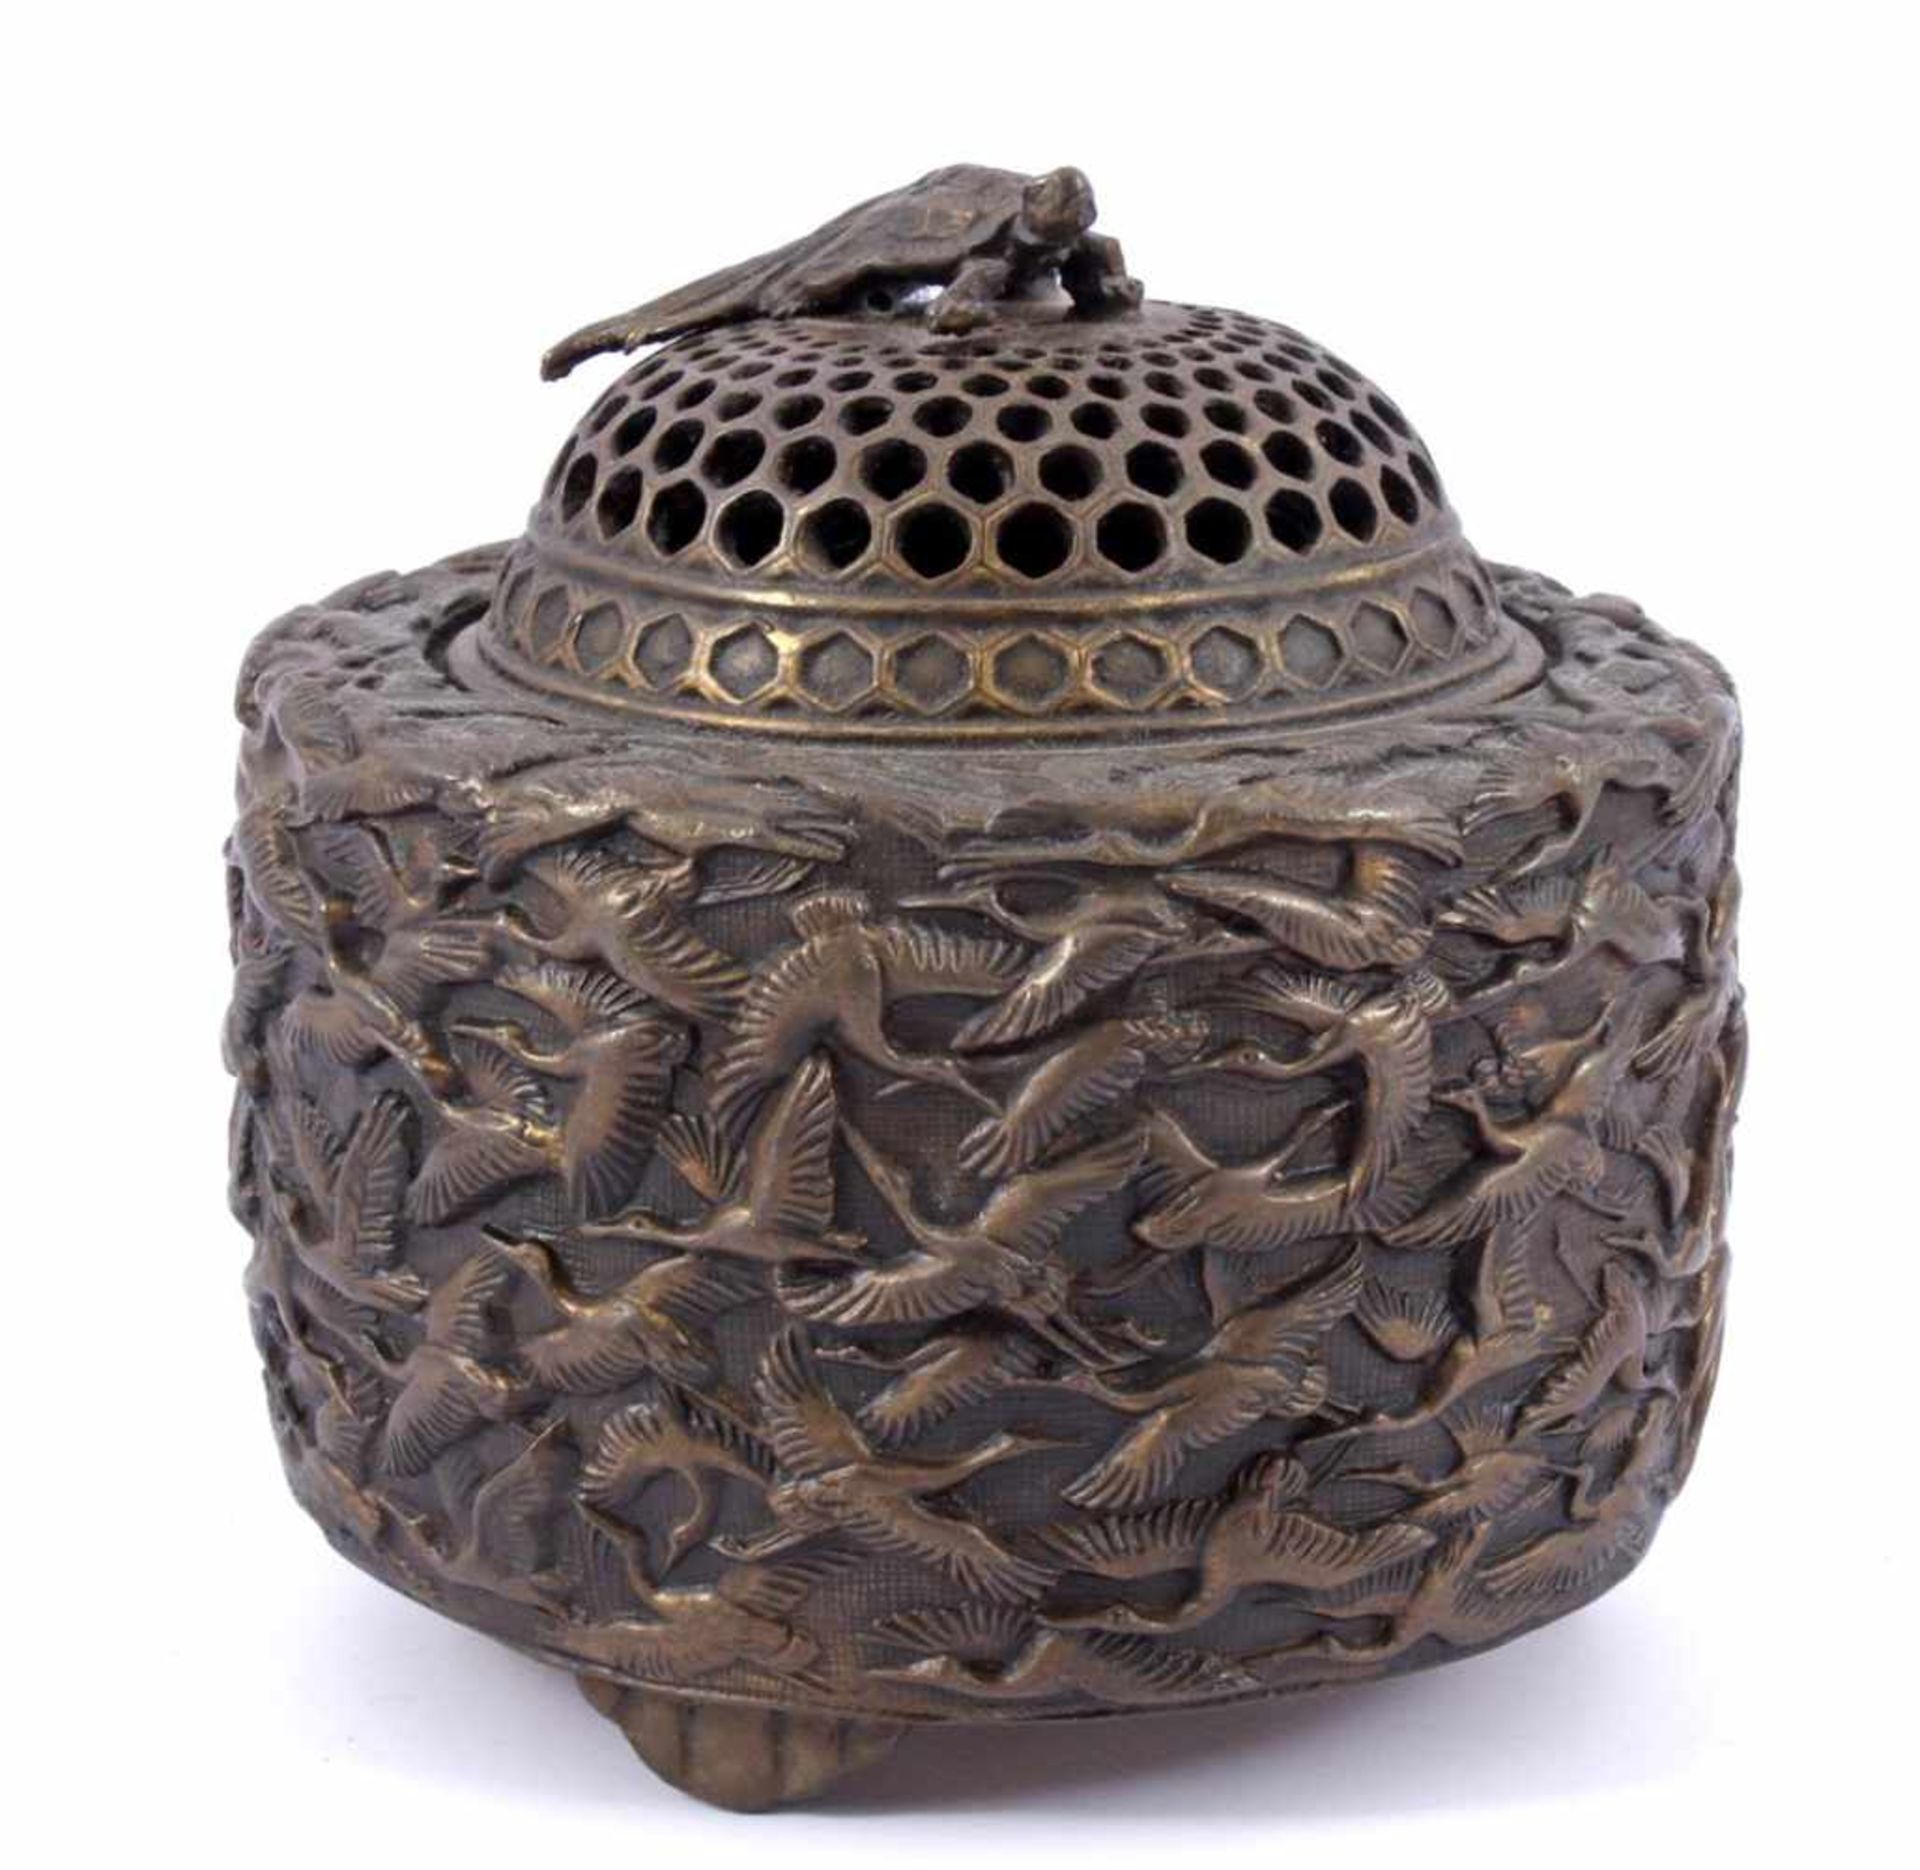 Chinees bronzen wierookpot met fraaie versiering van kraanvogels op buitenzijde en schildpad op